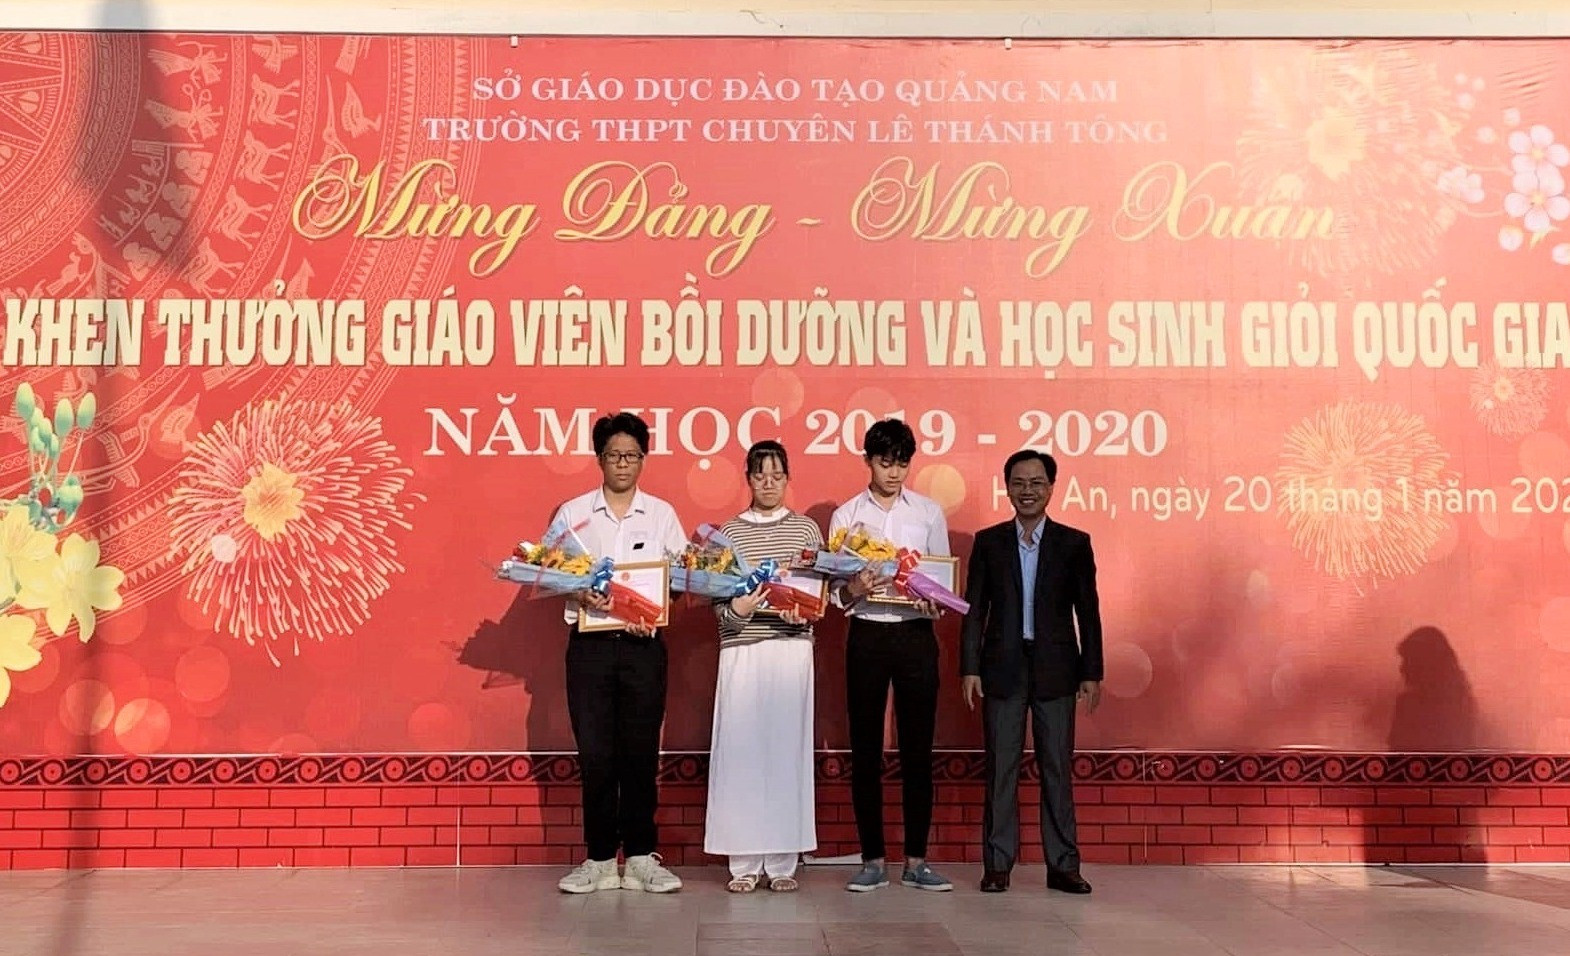 Trường THPT Chuyên Lê Thánh Tông khen thưởng 3 em học sinh đạt giải nhì trong kỳ thi học sinh giỏi quốc gia năm 2019 - 2020. Ảnh: THANH THẮNG